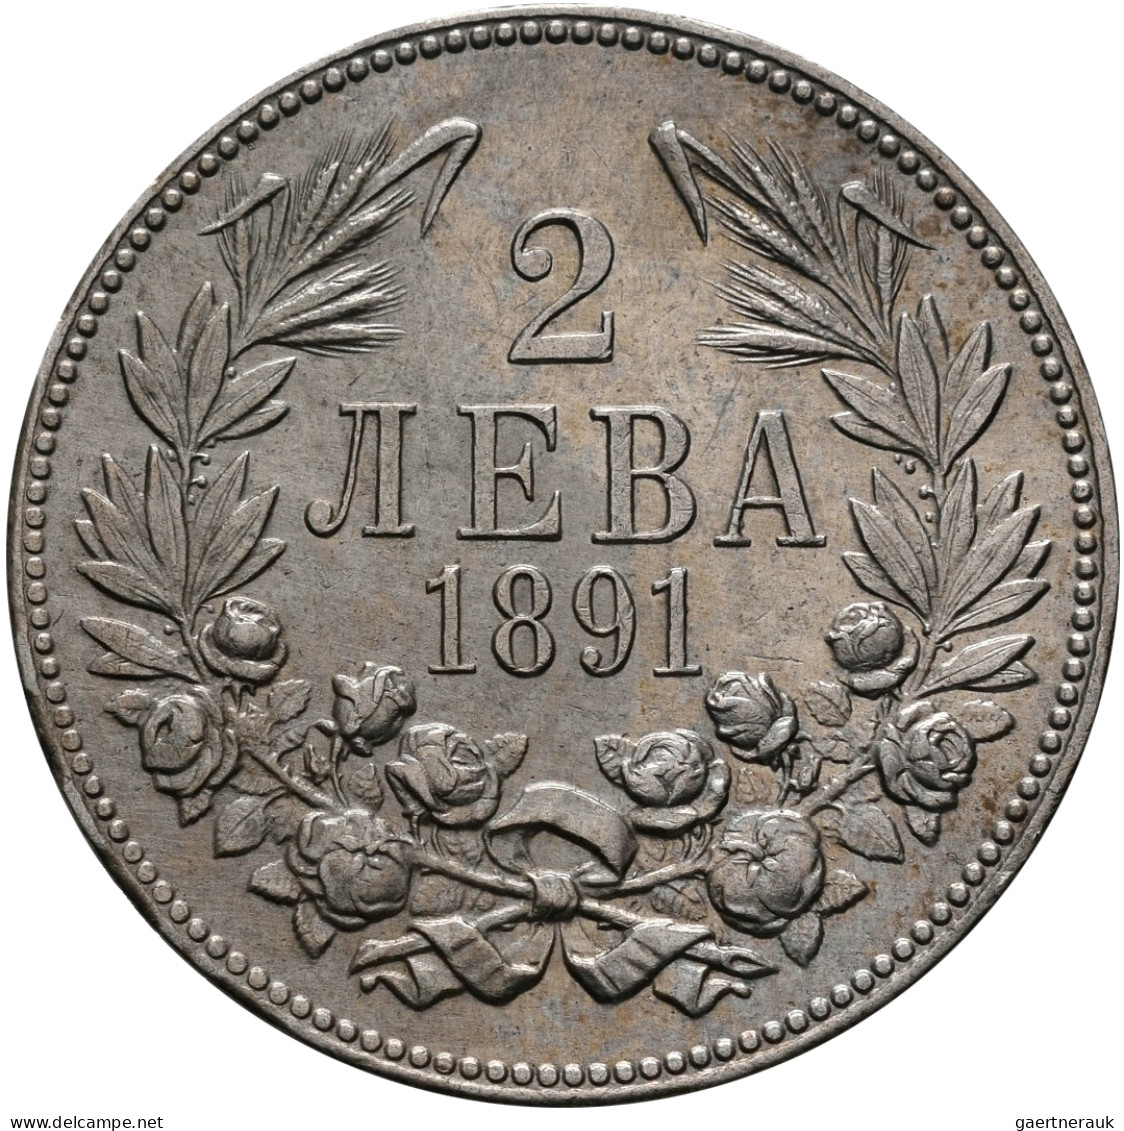 Bulgarien: Ferdinand I. 1887-1908: 2 Leva 1891, KM# 14, Vorzüglich. - Bulgaria